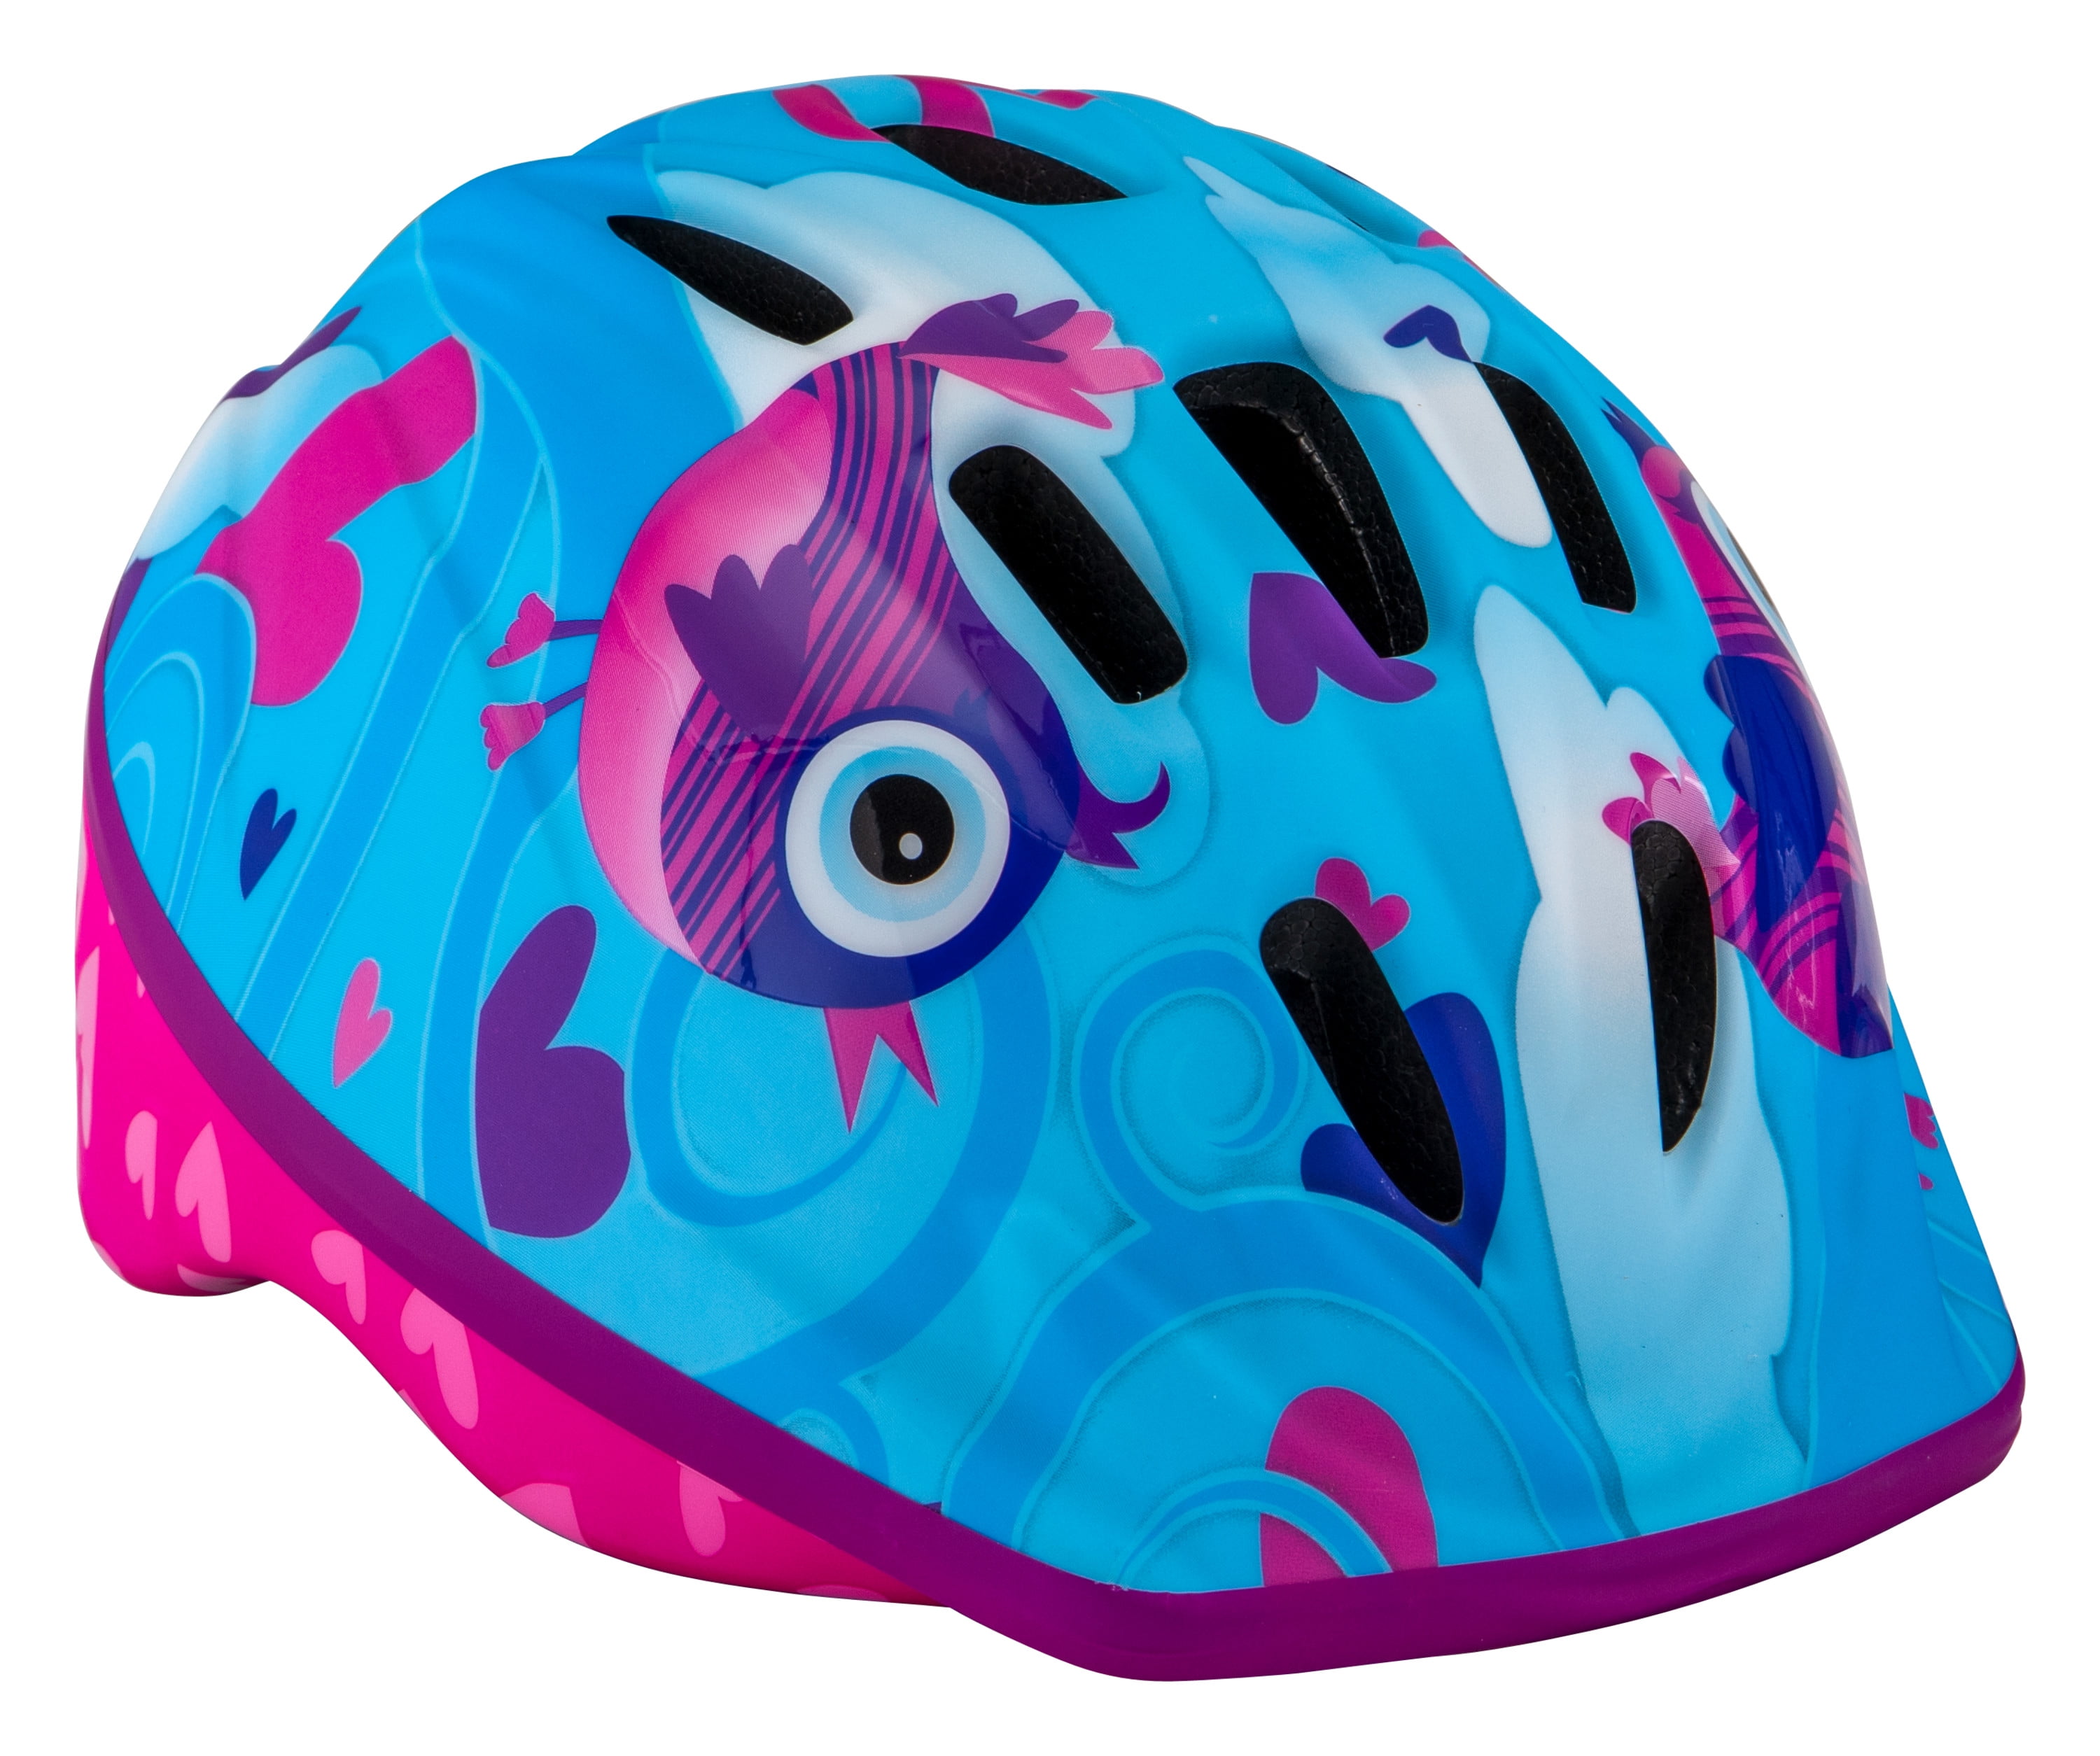 Blue/Purple Classic Stars Child Ages 5-8 NEW Schwinn Kids' Bike Helmet 